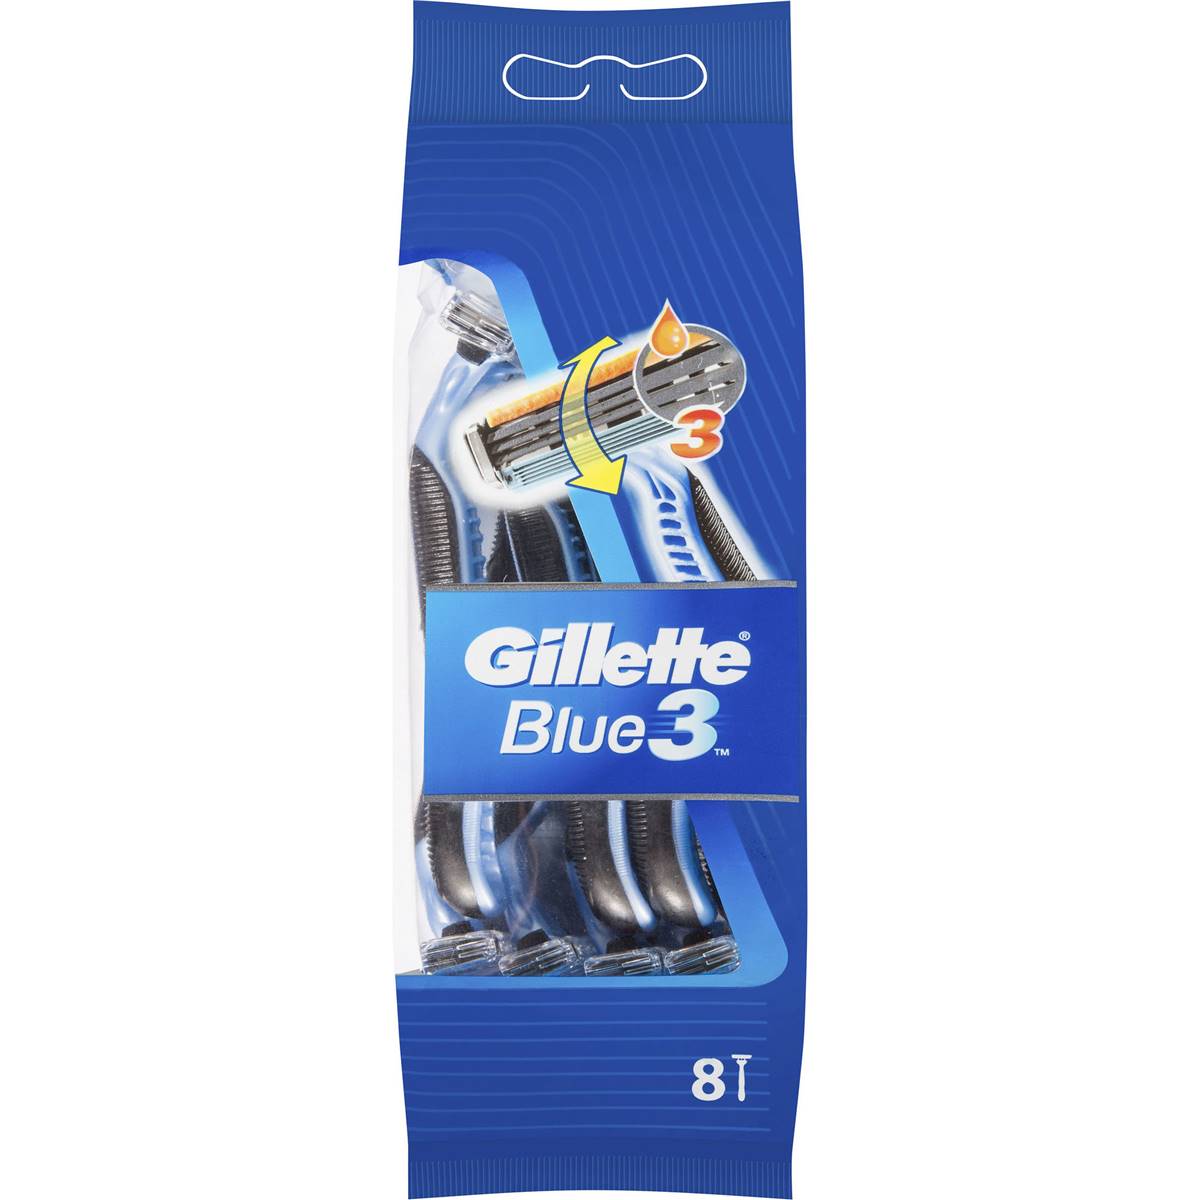 Gillette Blue 3 Disposable Shaving Razor 